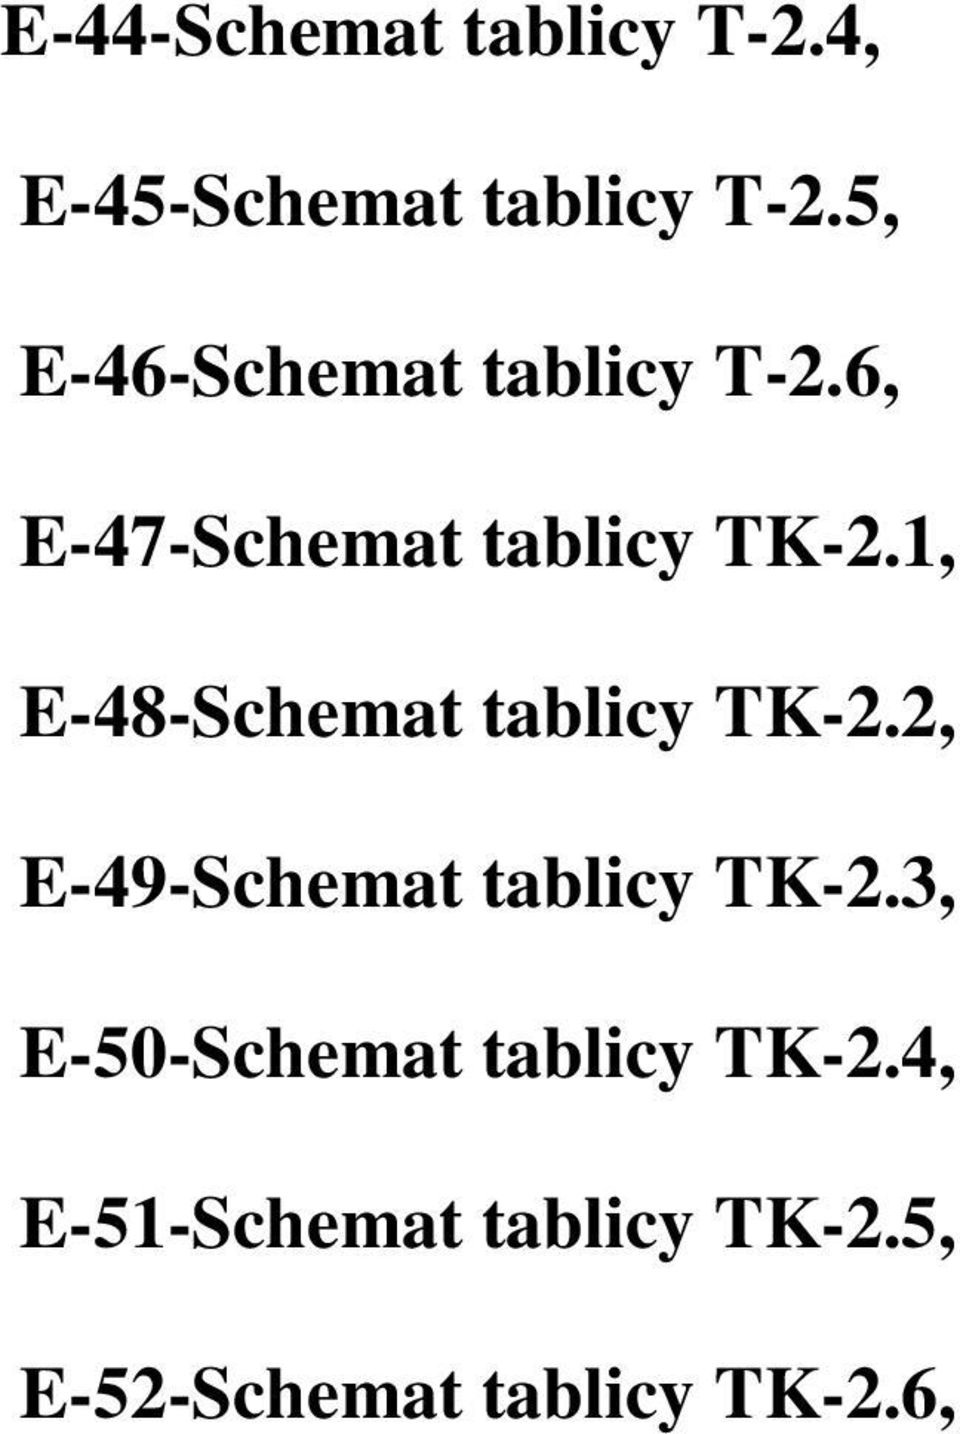 1, E-48-Schemat tablicy TK-2.2, E-49-Schemat tablicy TK-2.